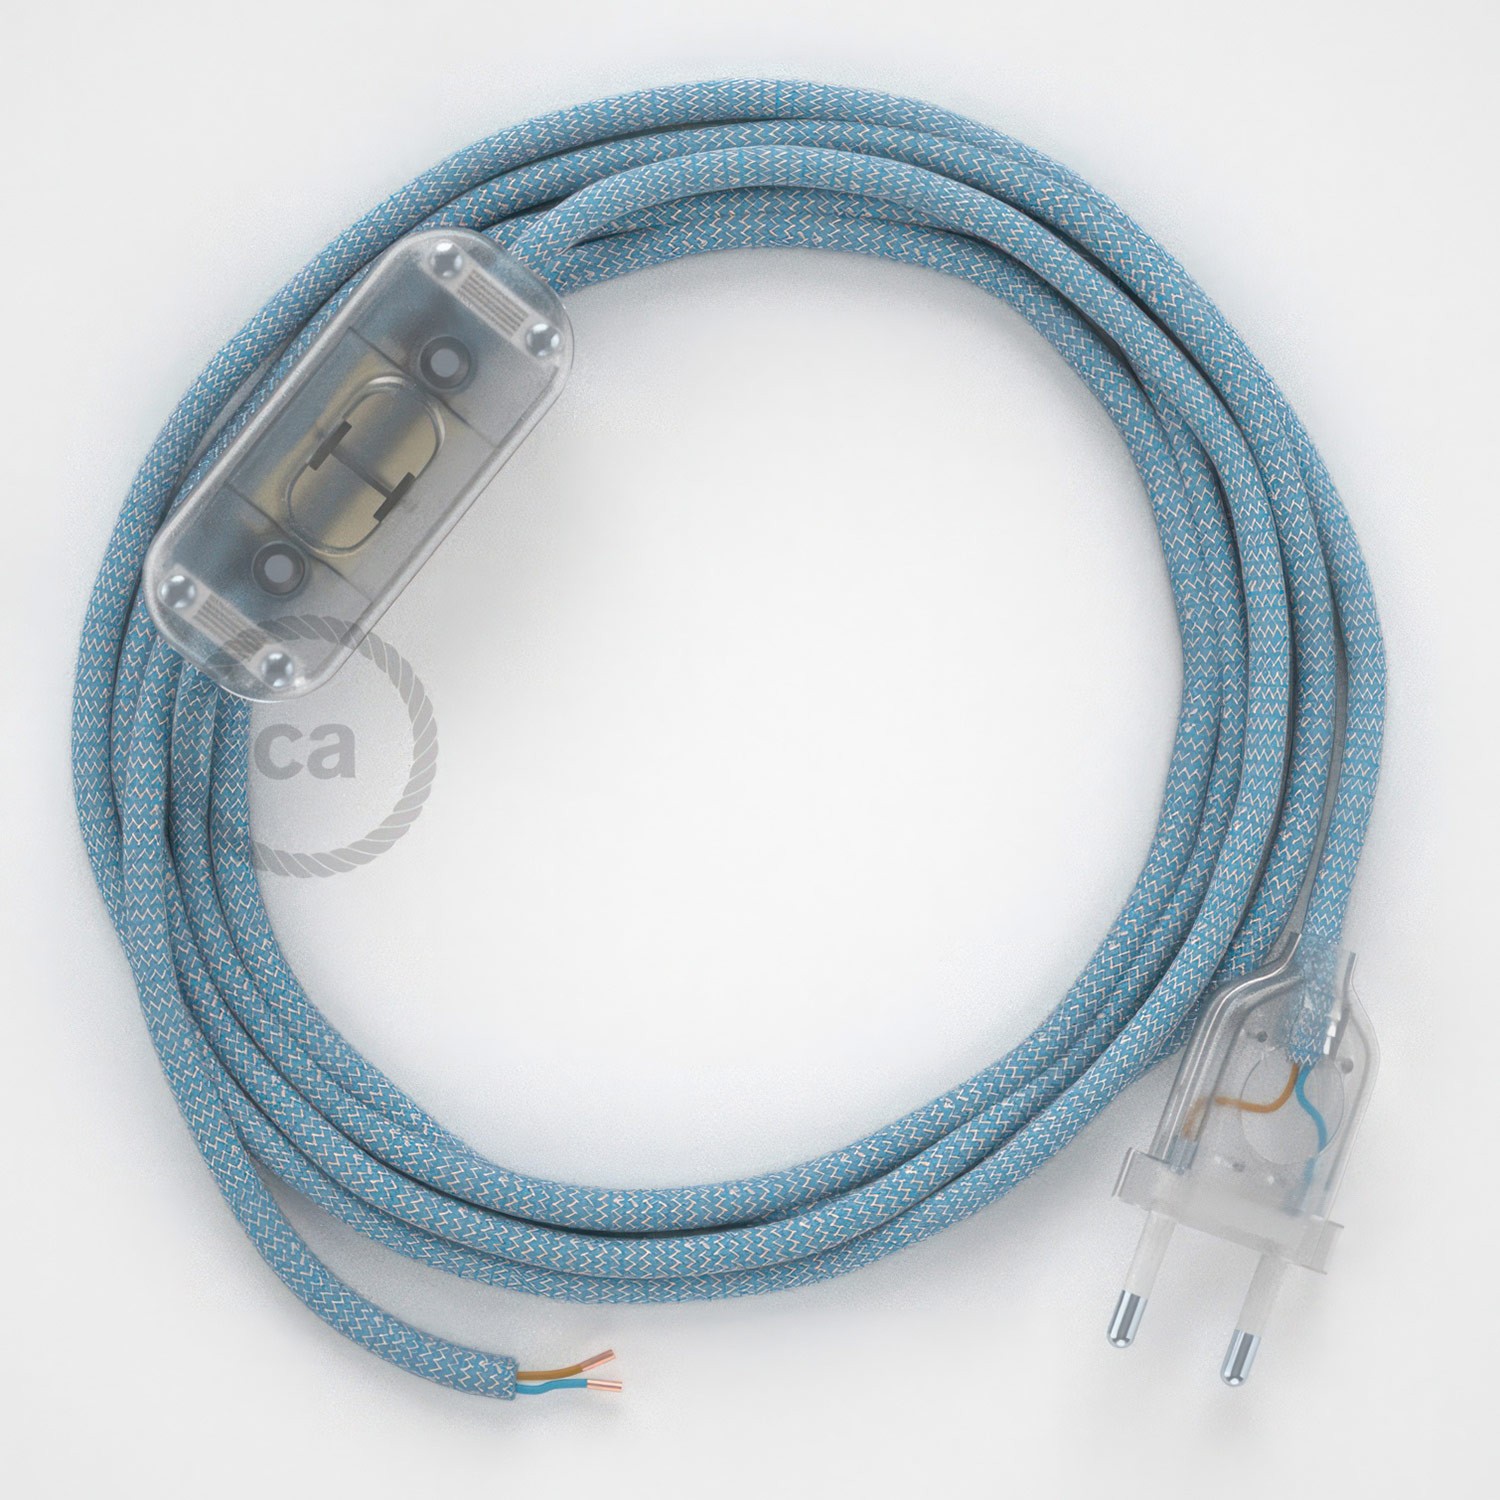 Cableado para lámpara, cable RD75 Algodón y Lino ZigZag Azul Steward 1,8m. Elige tu el color de la clavija y del interruptor!